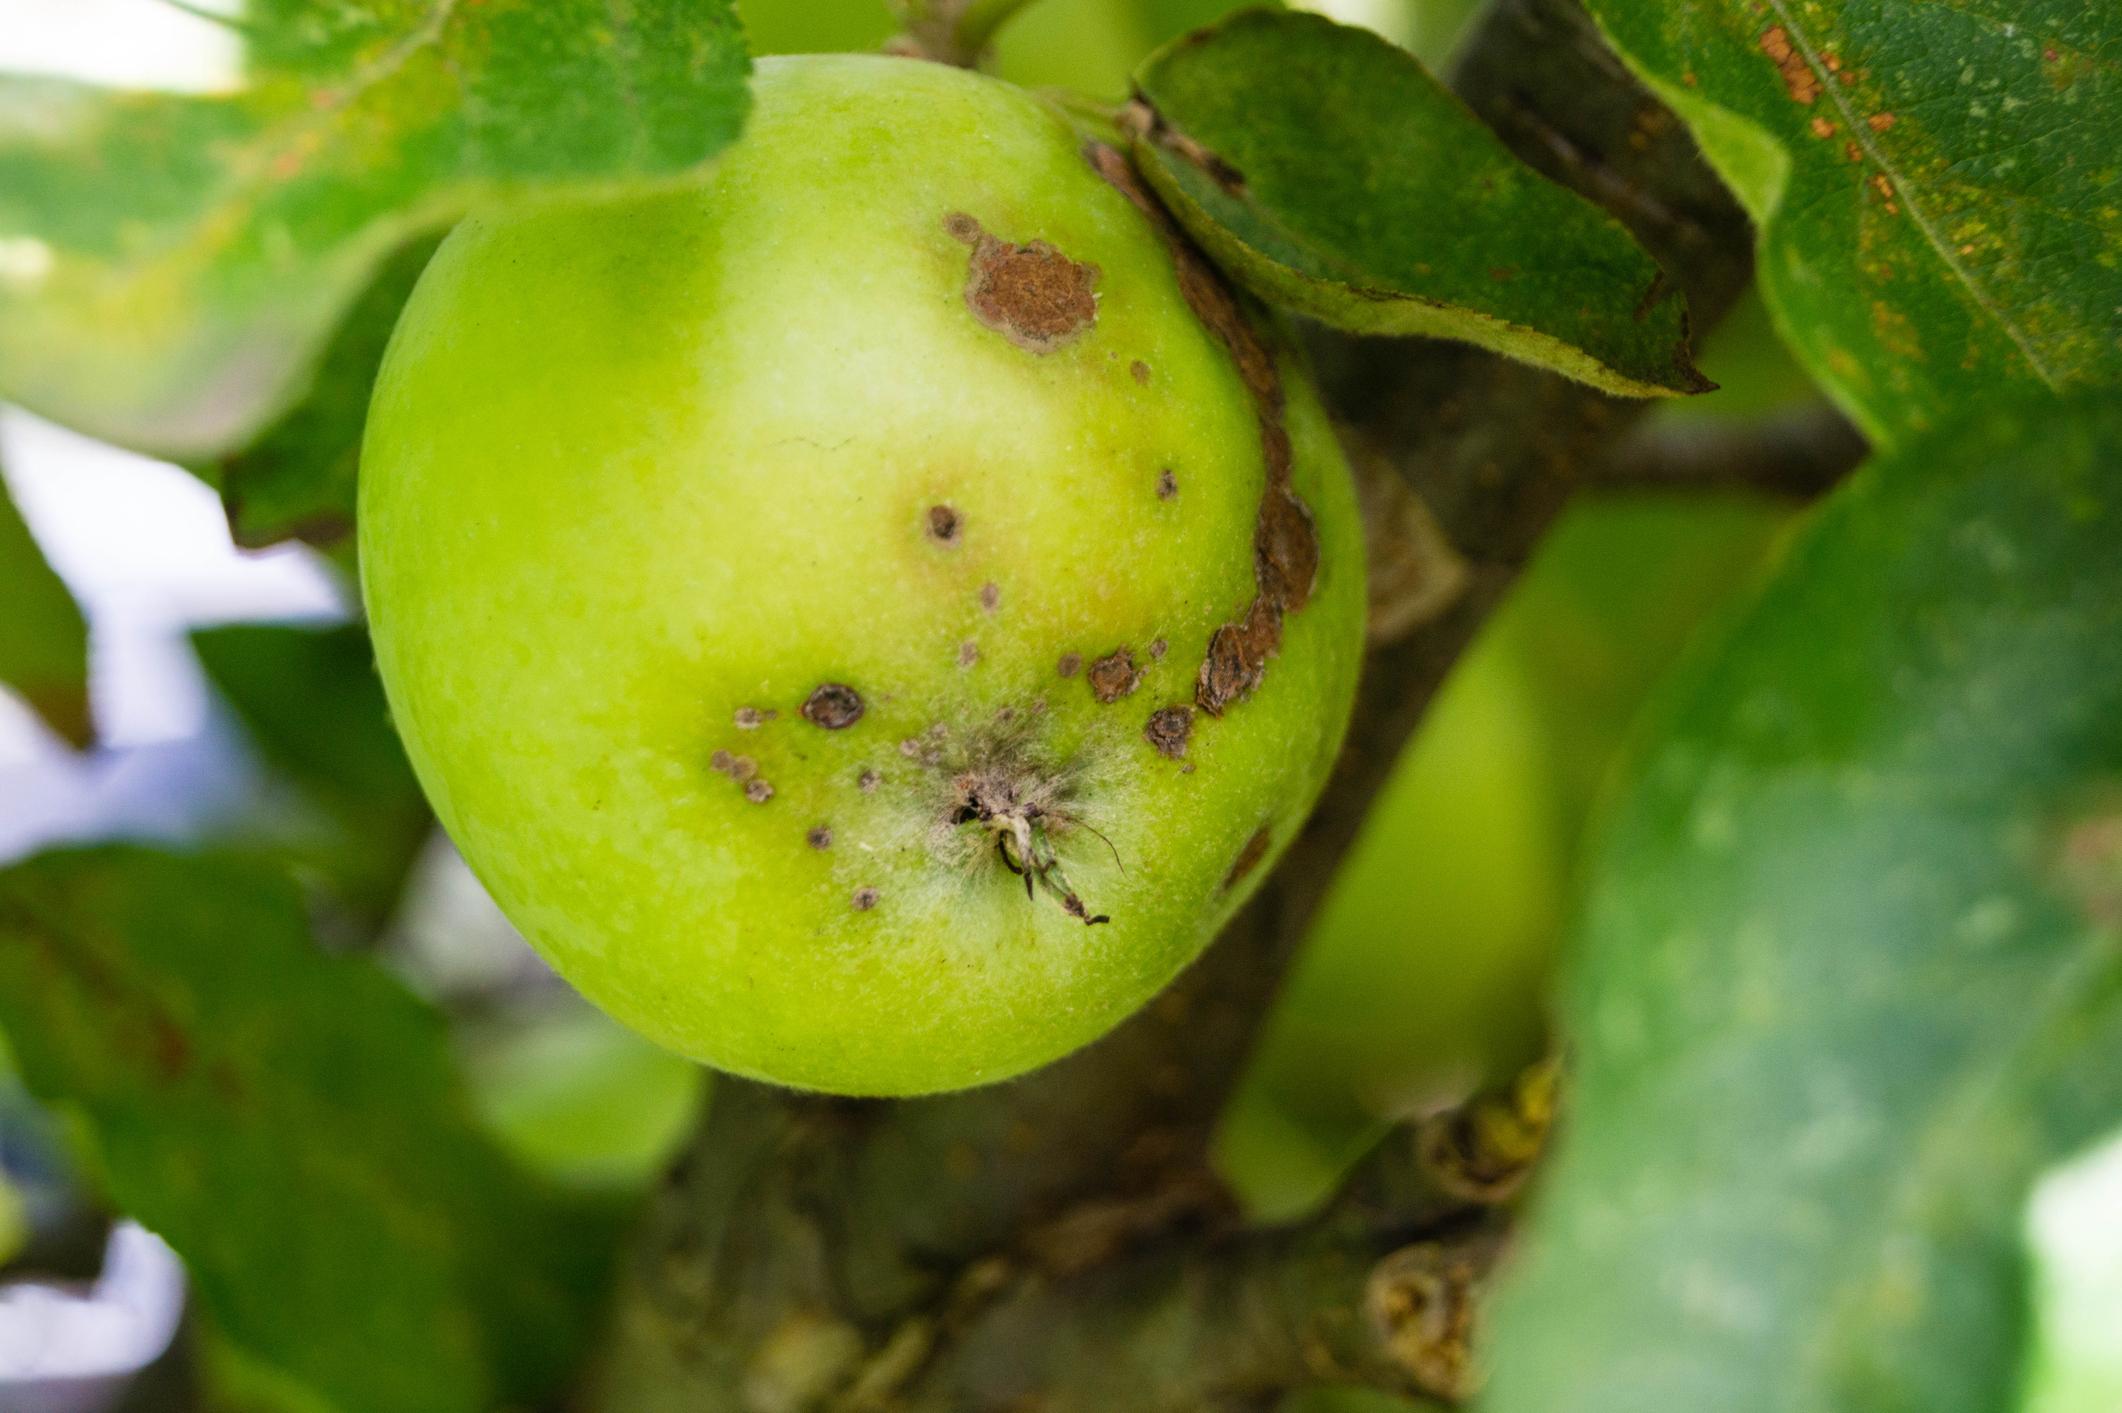 Die Larven der Apfelsägewespe minieren unter der Epidermis der Früchte sodass auf der Oberfläche des Apfels gewundenen, verkorkte Narben zu erkennen sind. 